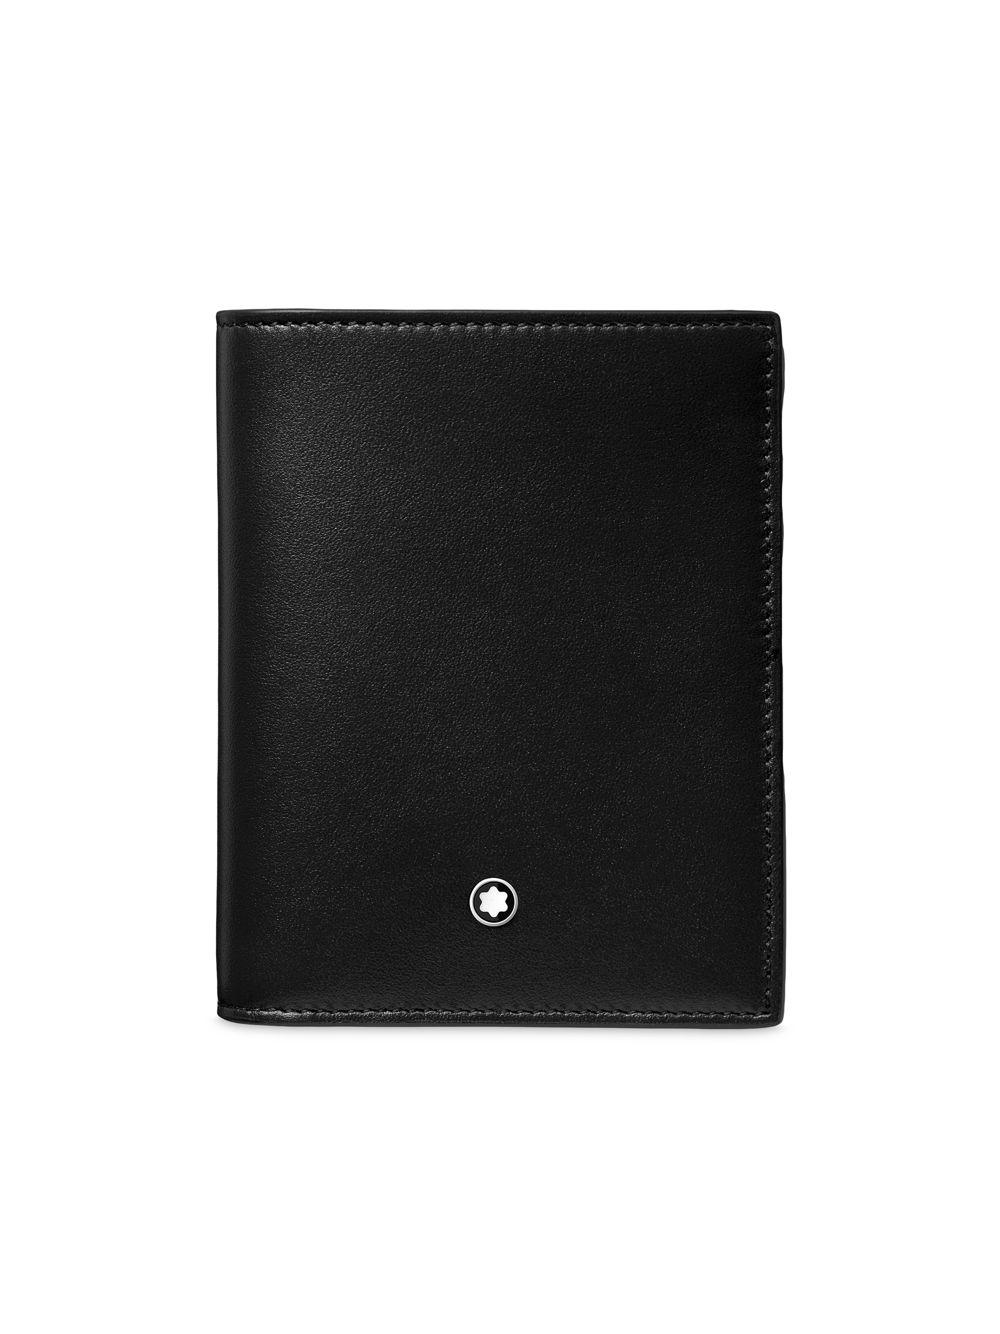 Компактный бумажник Meisterstück Montblanc, черный montblanc бумажник